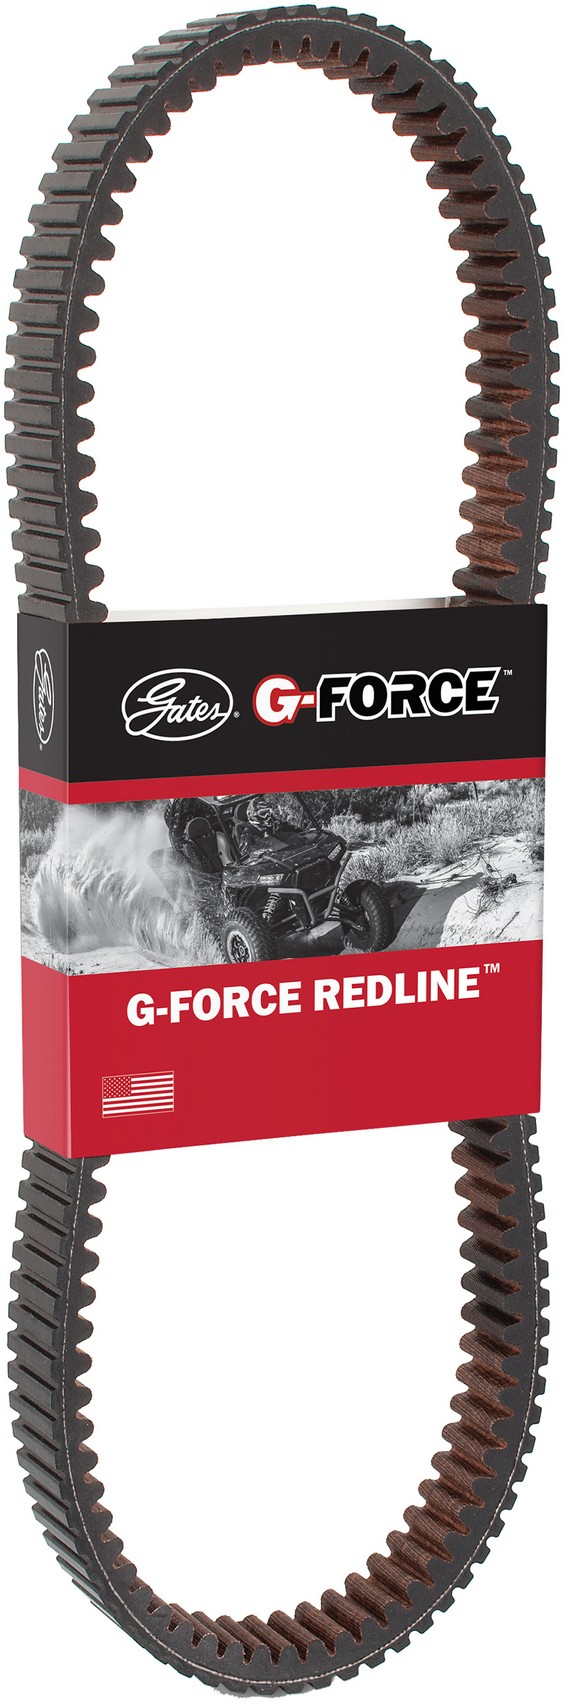 Gates G-Force Redline Continuously Variable Transmission (CVT) Belt - 41R4514